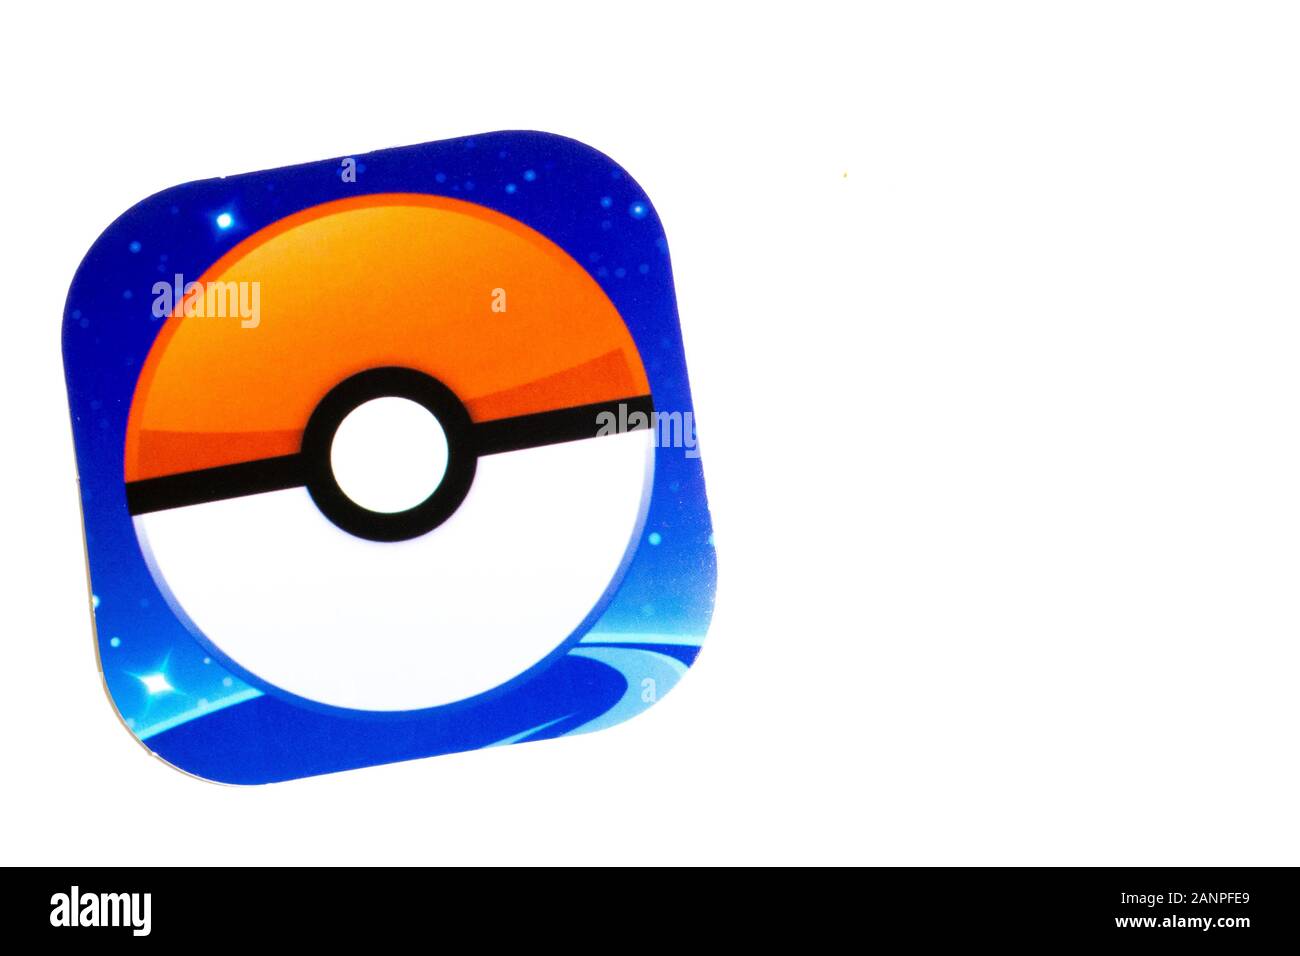 Los Angeles, Californie, États-Unis - 17 janvier 2020: Pokemon GO mobile phone jeu app logo sur fond avec espace de copie, éditorial illustratif Banque D'Images